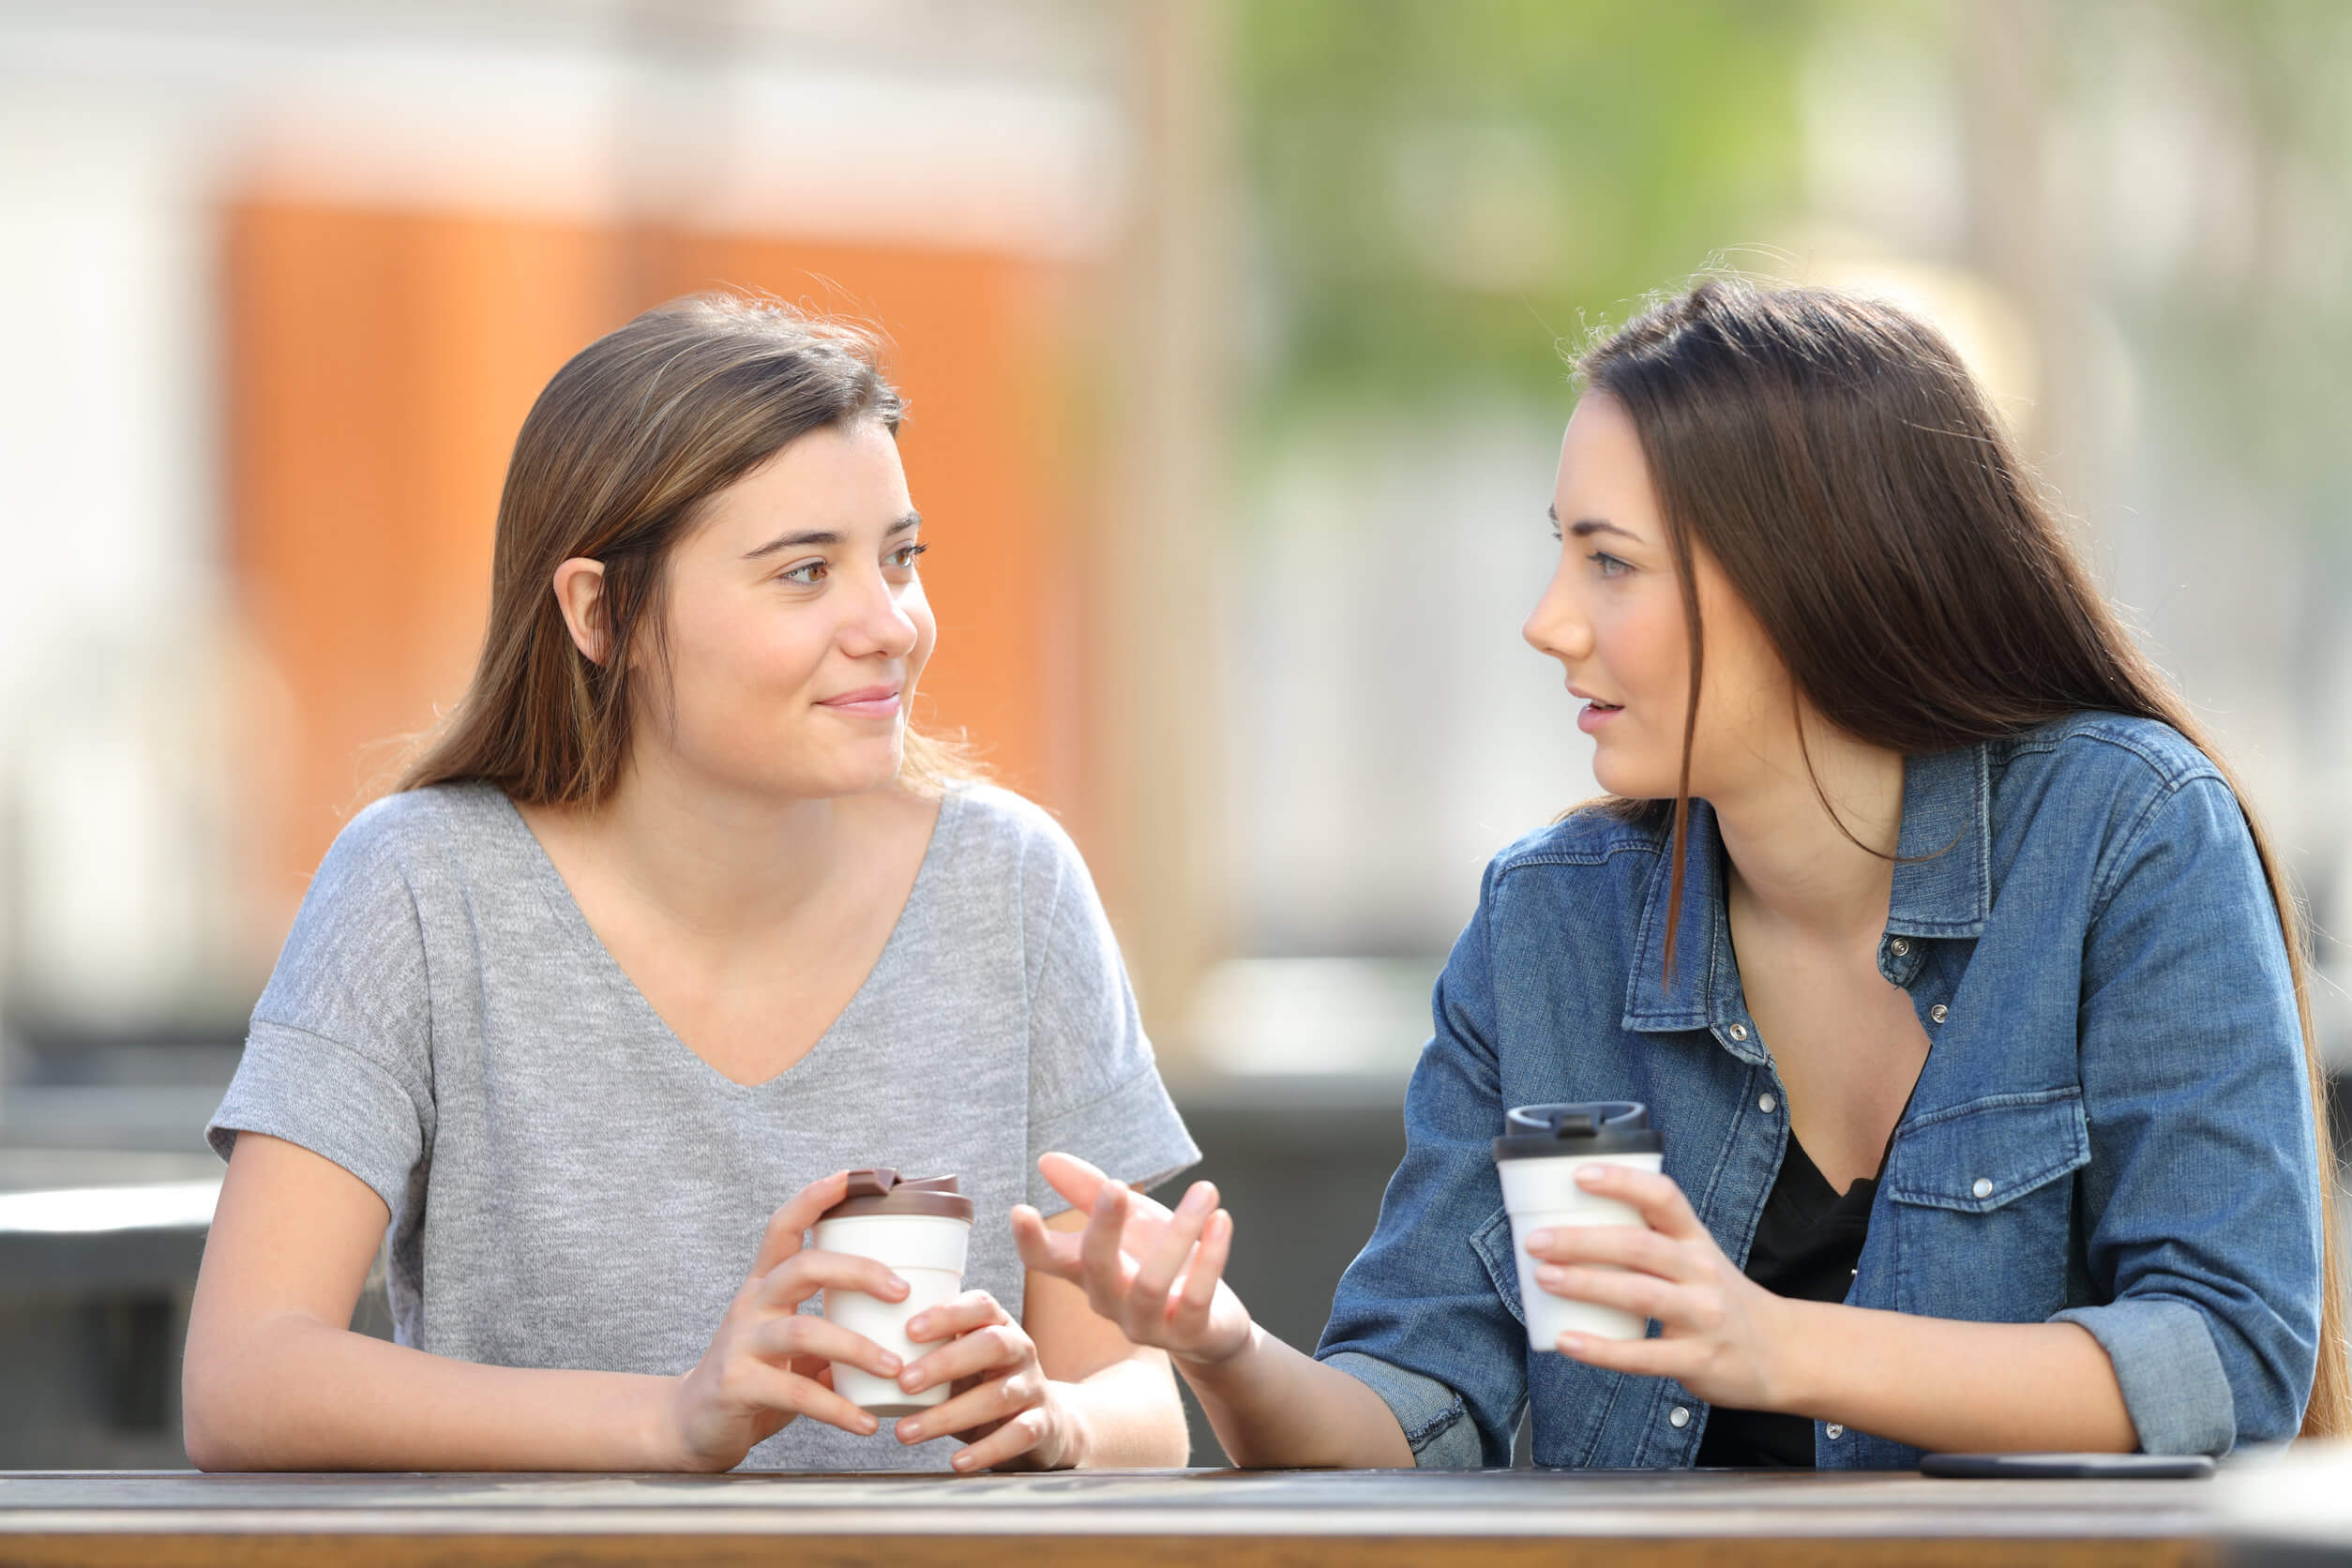 Ankereffekt - zwei junge Frauen im Gespräch